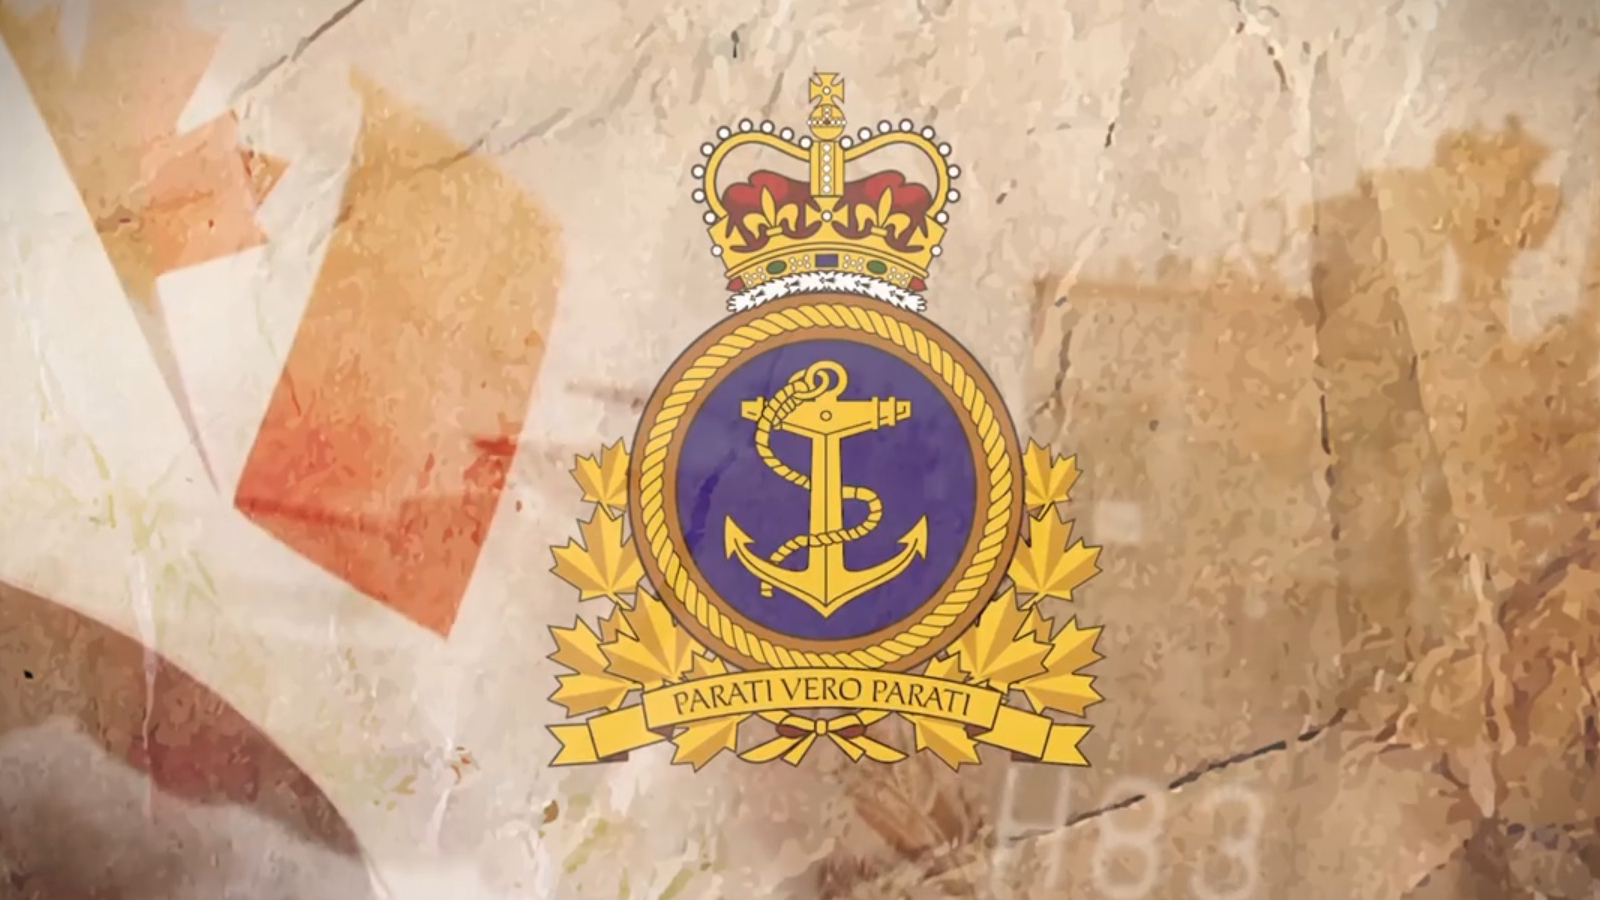 Diapositive - Pendant 111 ans, les marins canadiens ont répondu aux appels